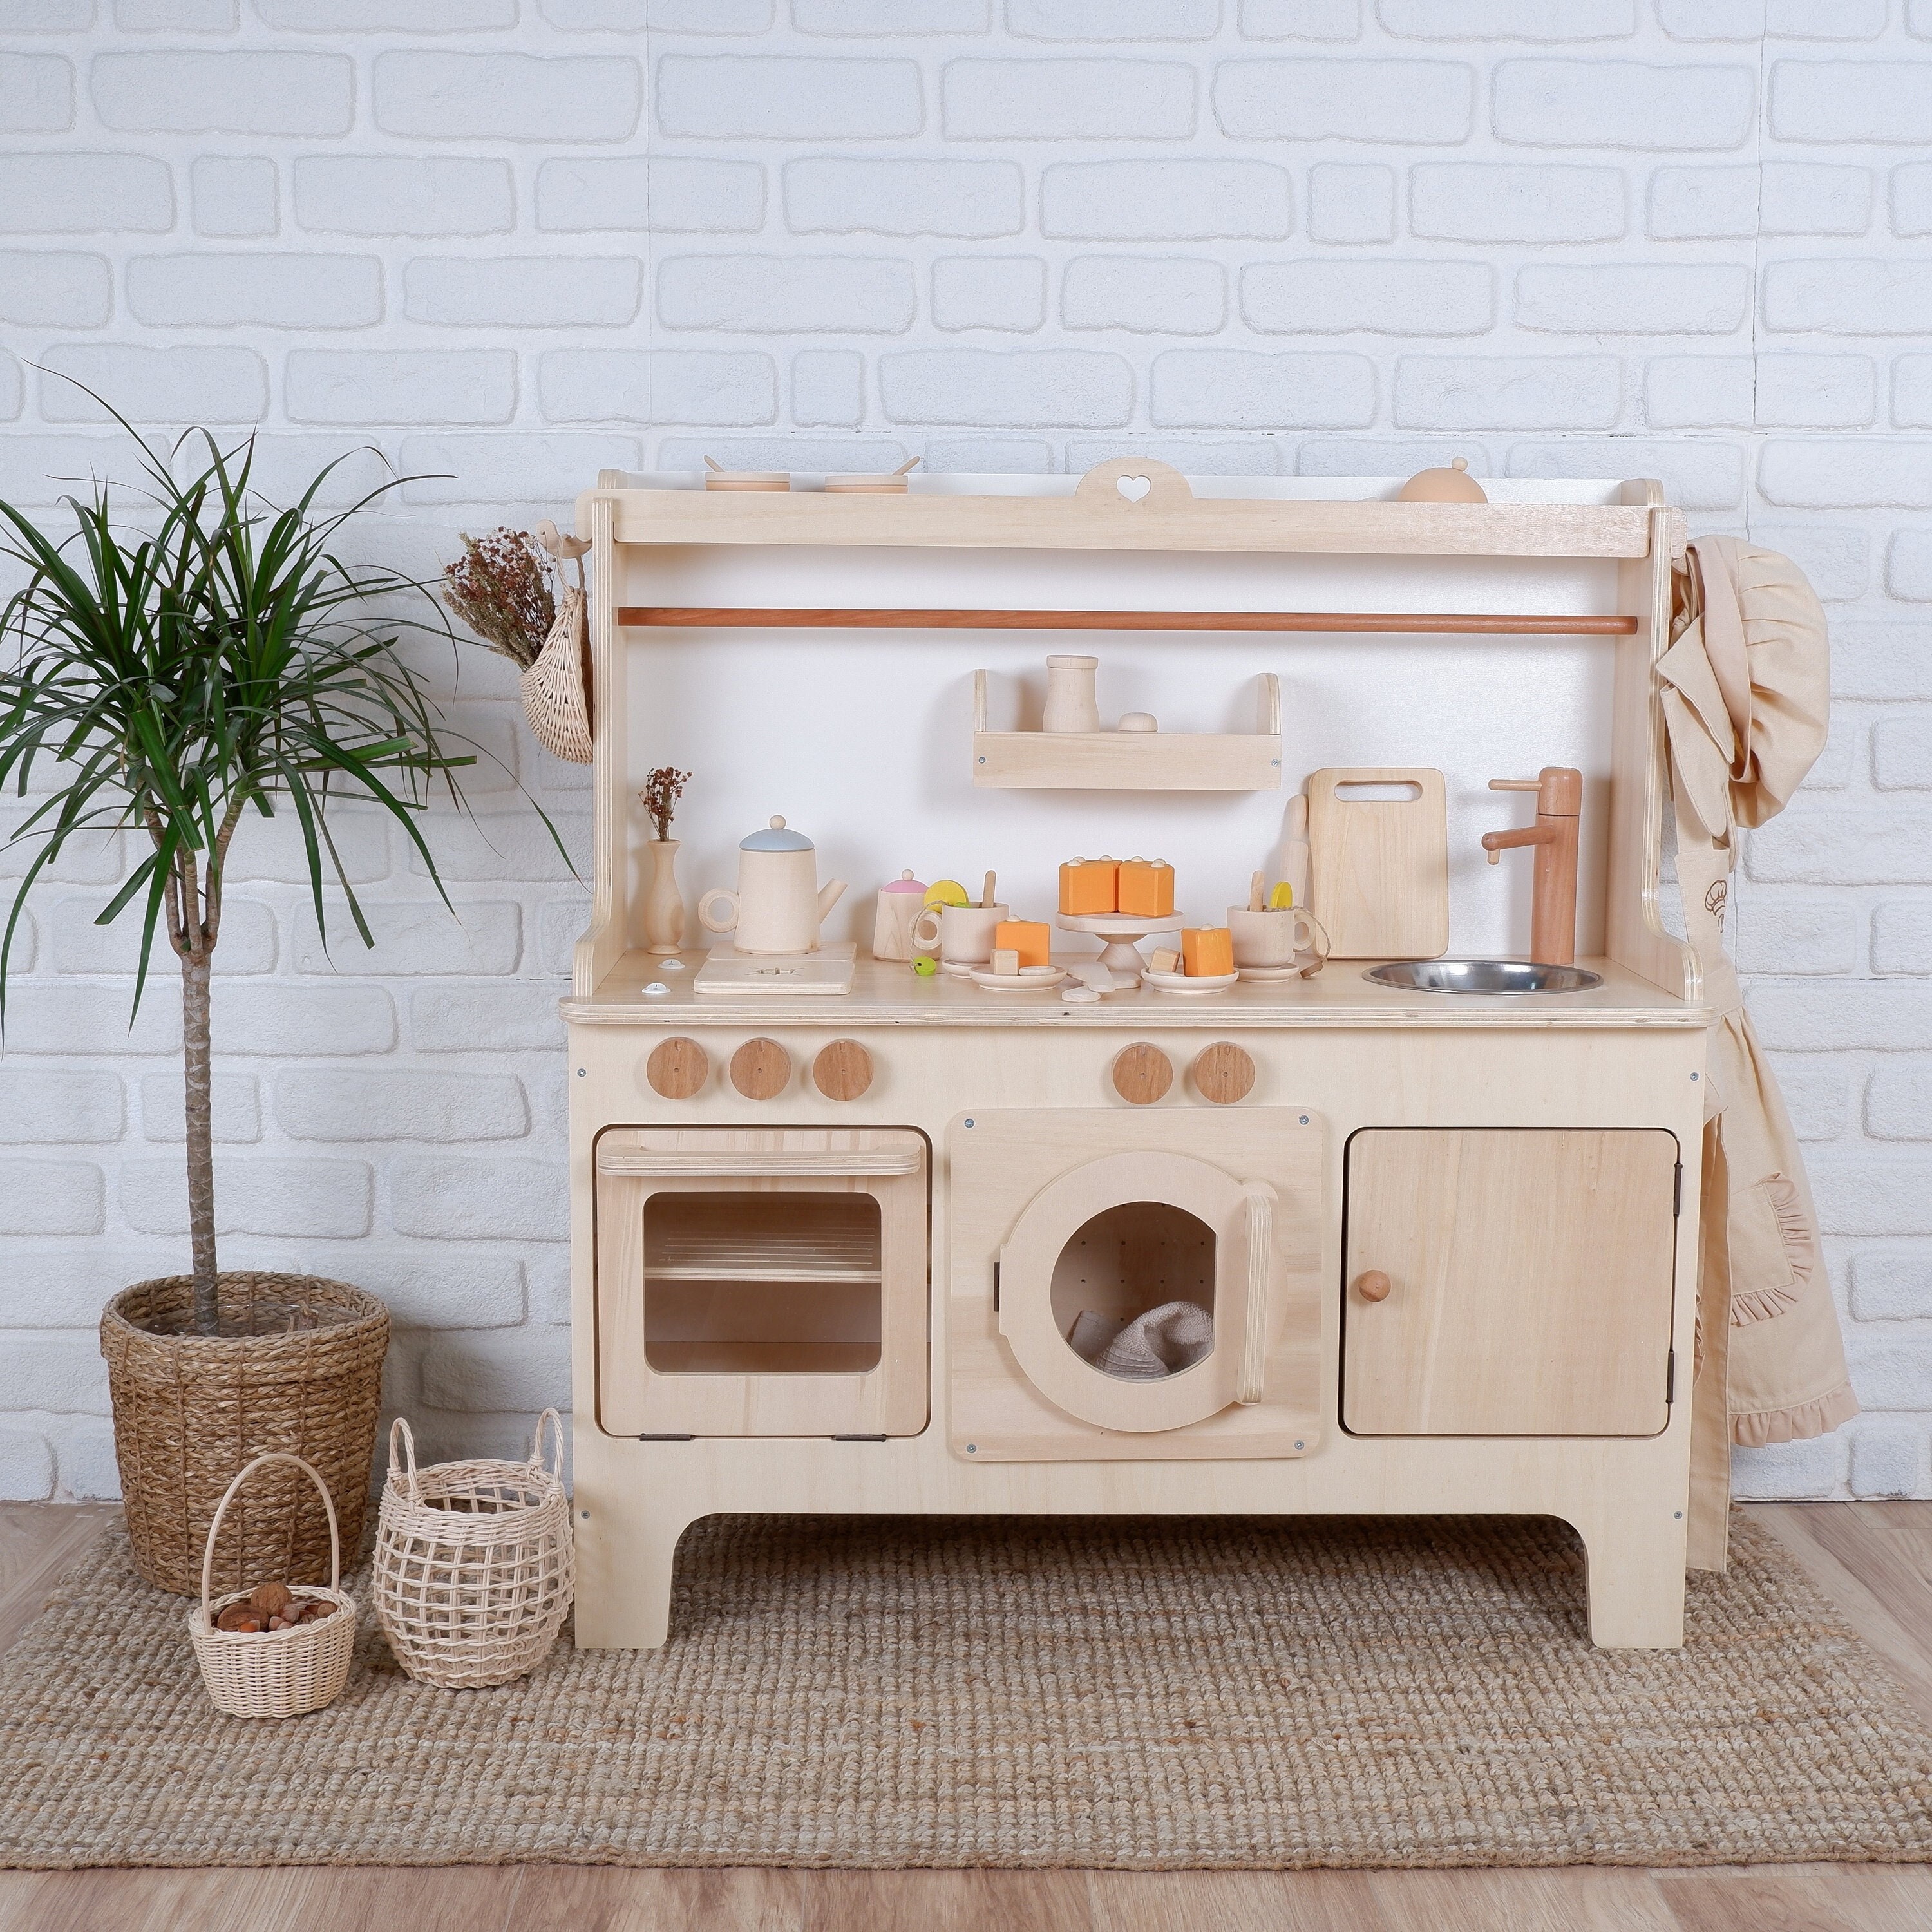 INFANS Kid Kitchen Playset, Pretend Wooden Toddler Kitchen Toy Set, Children Pretend Cooking Set with Accessories